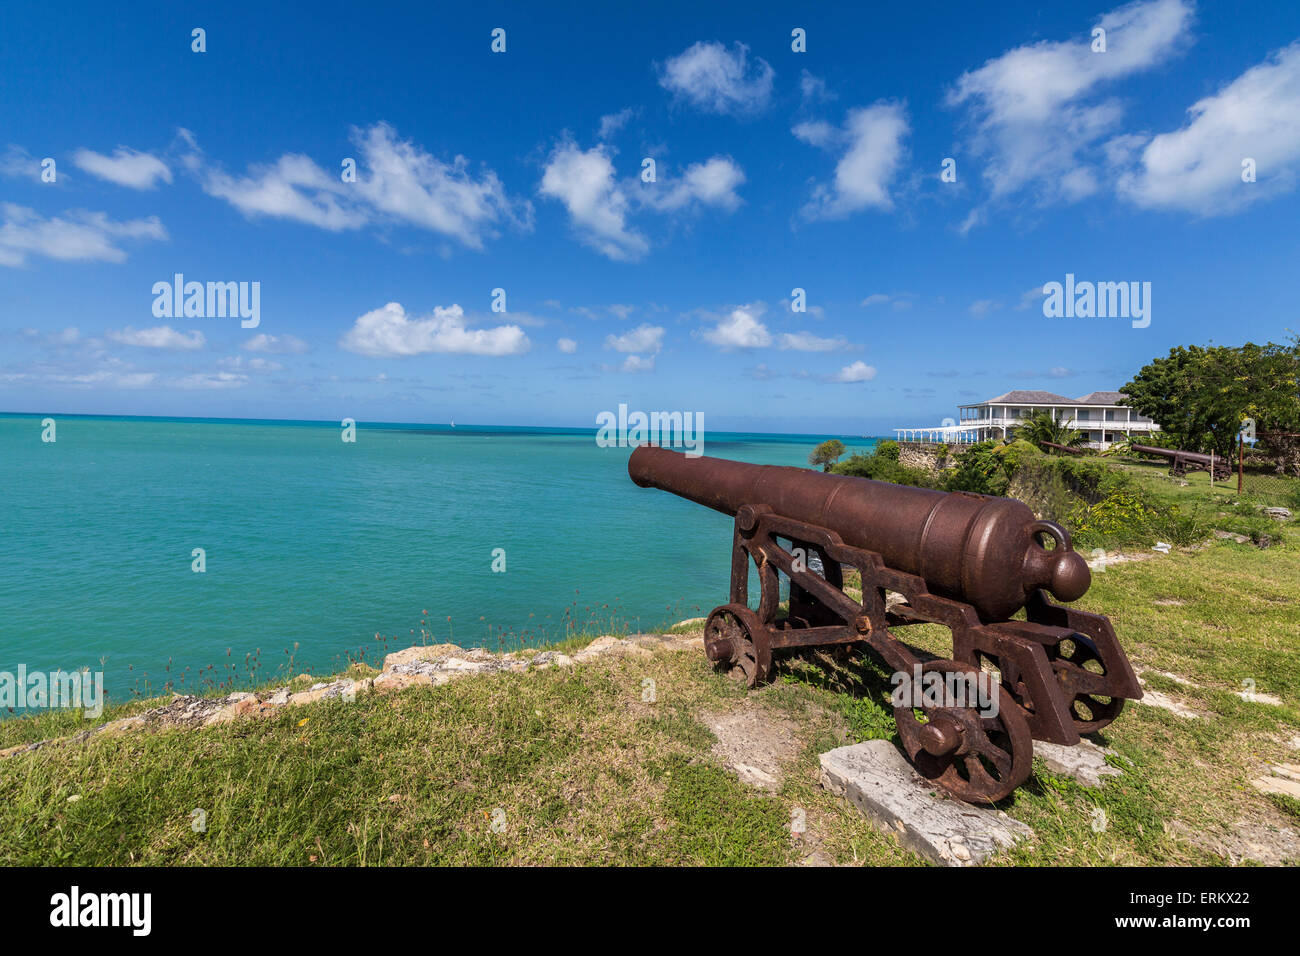 Un canon datant du 17e siècle, monte la garde à l'un de Fort James monuments historiques les plus importants d'Antigua Banque D'Images